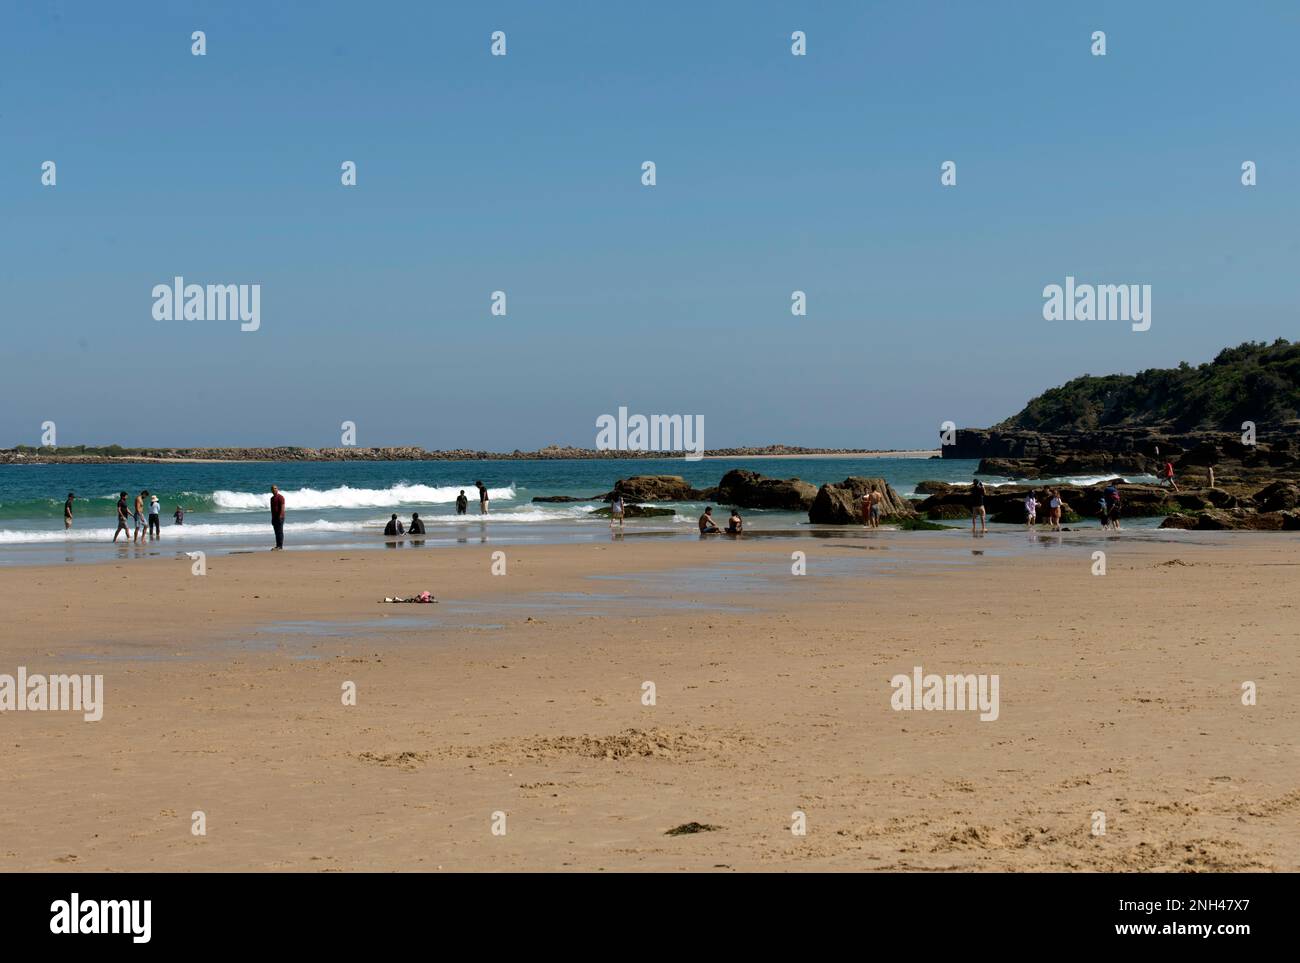 Personnes profitant d'une journée ensoleillée sur Caves Beach, Nouvelle-Galles du Sud, Australie (photo de Tara Chand Malhotra) Banque D'Images